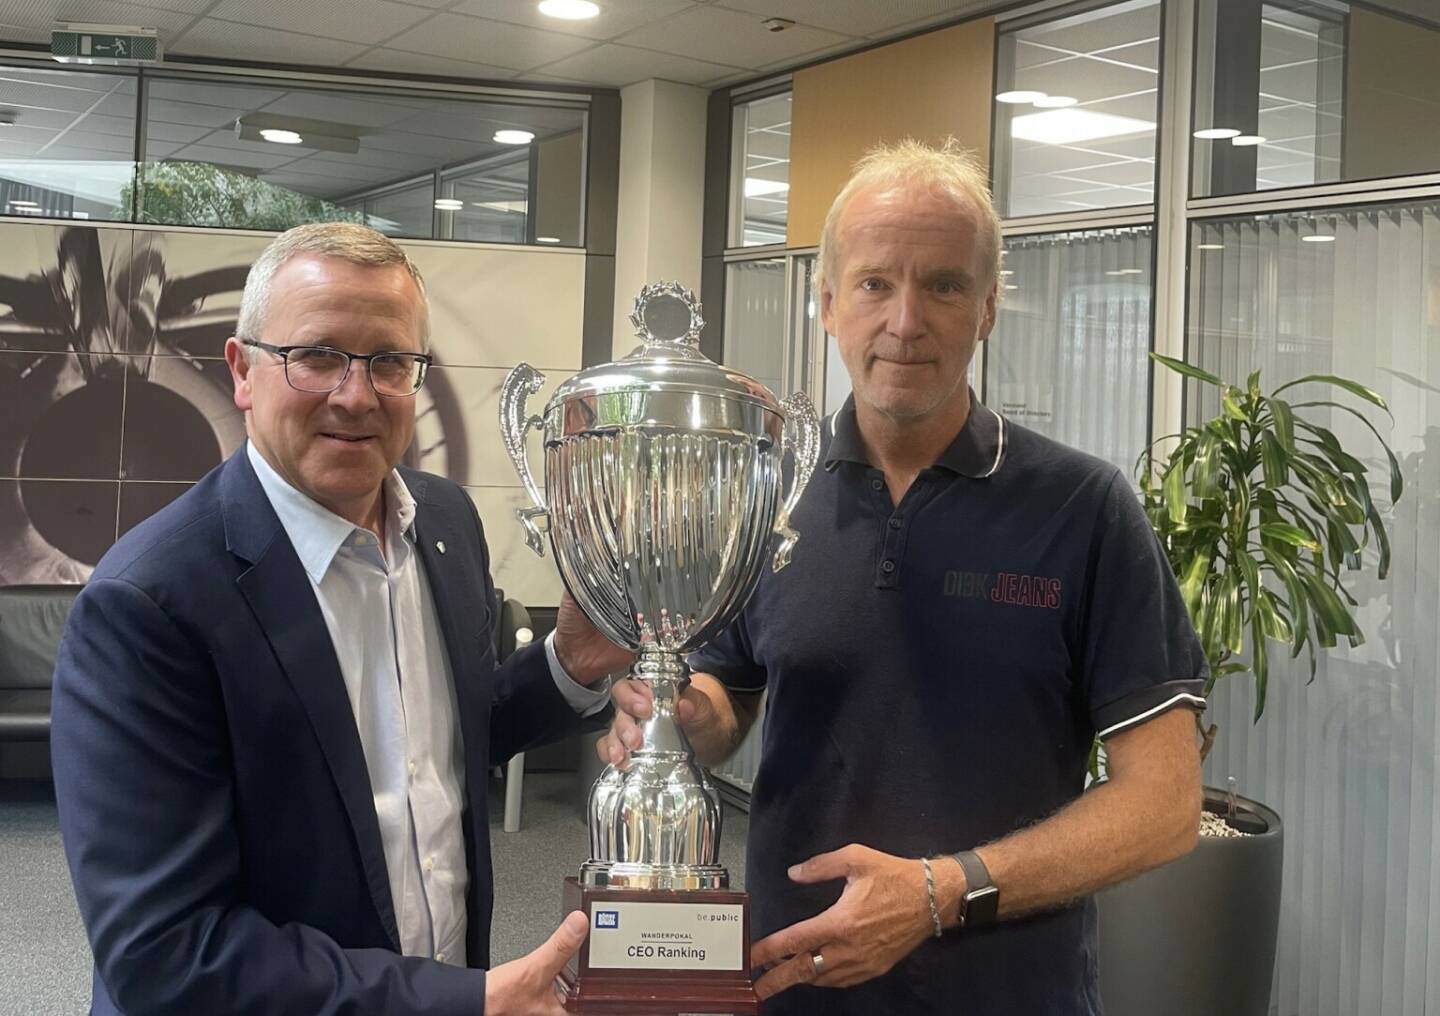 Robert Machtlinger übernimmt den CEO-Ranking-Pokal von Ex-SBO-CEO Gerald Grohmann, der ihn nach seinem Pensionsantritt wieder stiftete. Danke an beide!